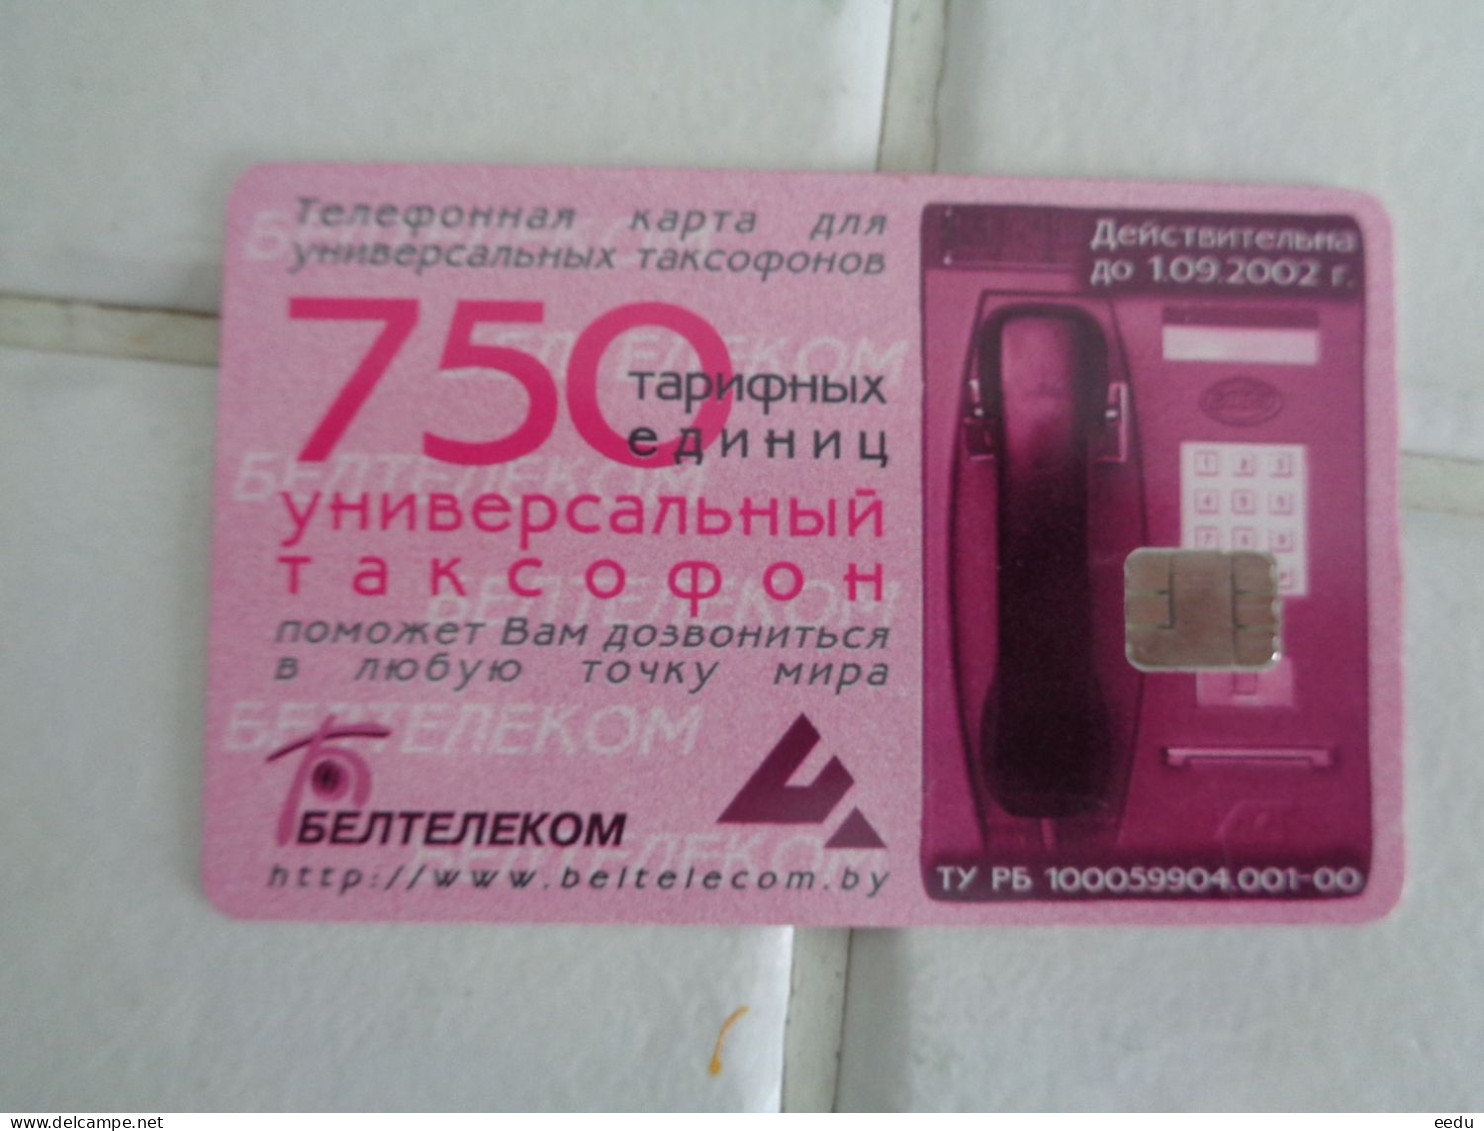 Belarus Phonecard - Bielorussia